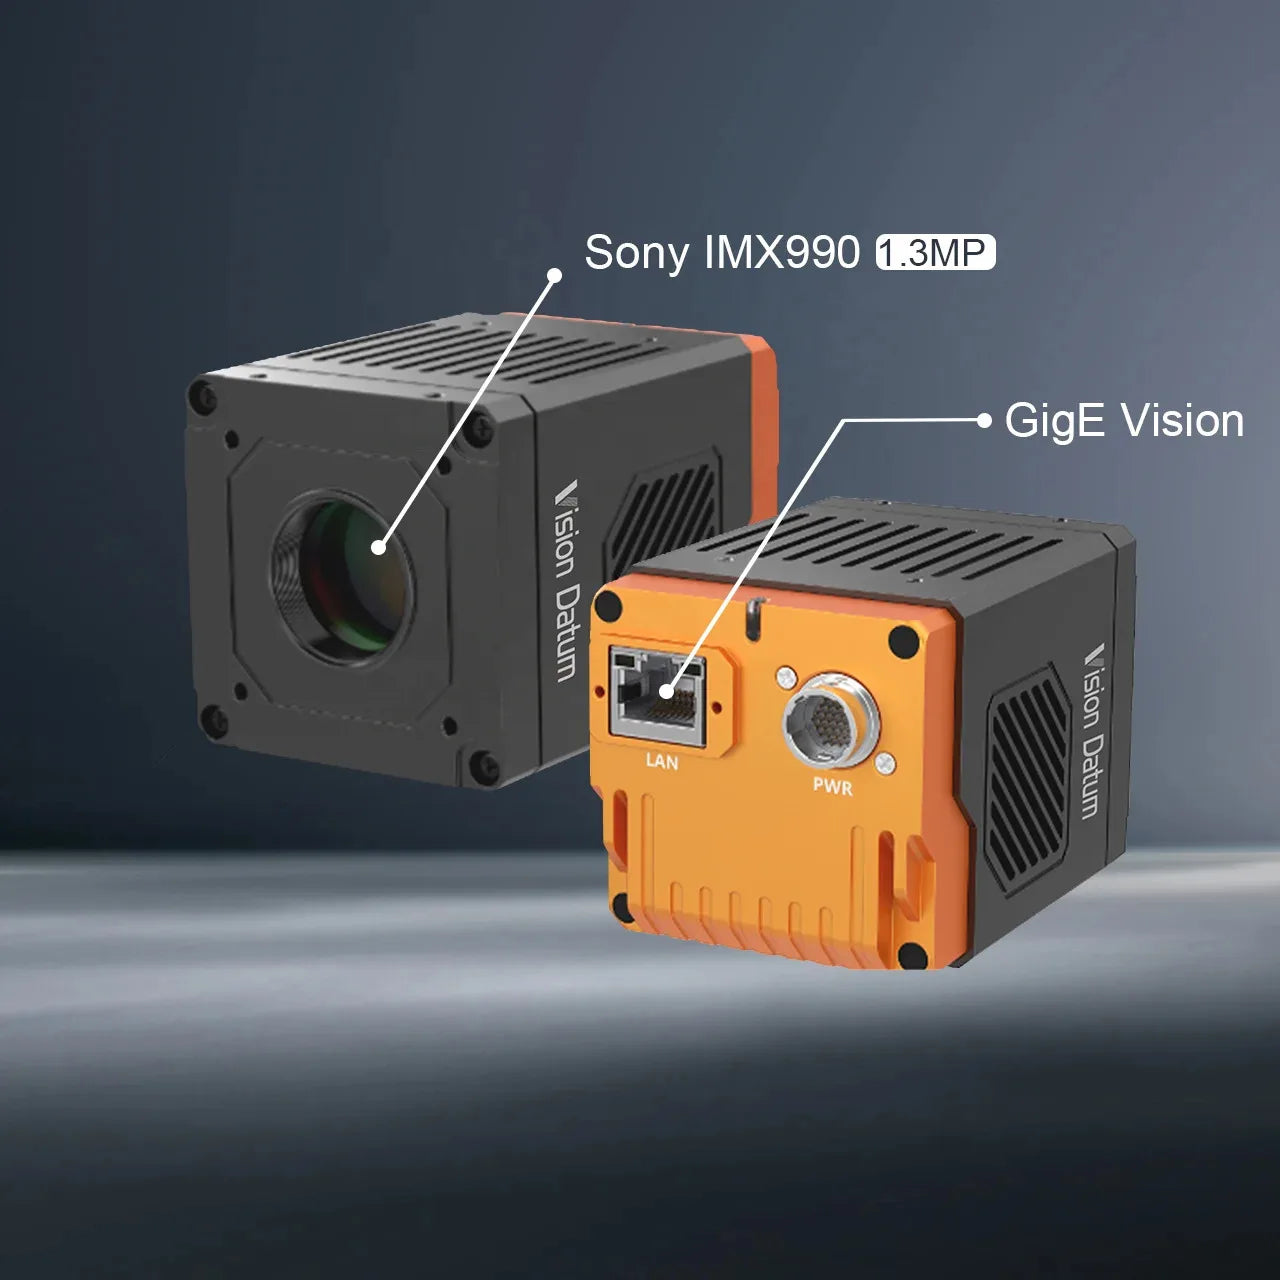 Тепловизионная камера GigE с областным сканированием INGaAs, 1,3 МП, 91 кадр/с, IMX990, поддержка SWIR, Windows 